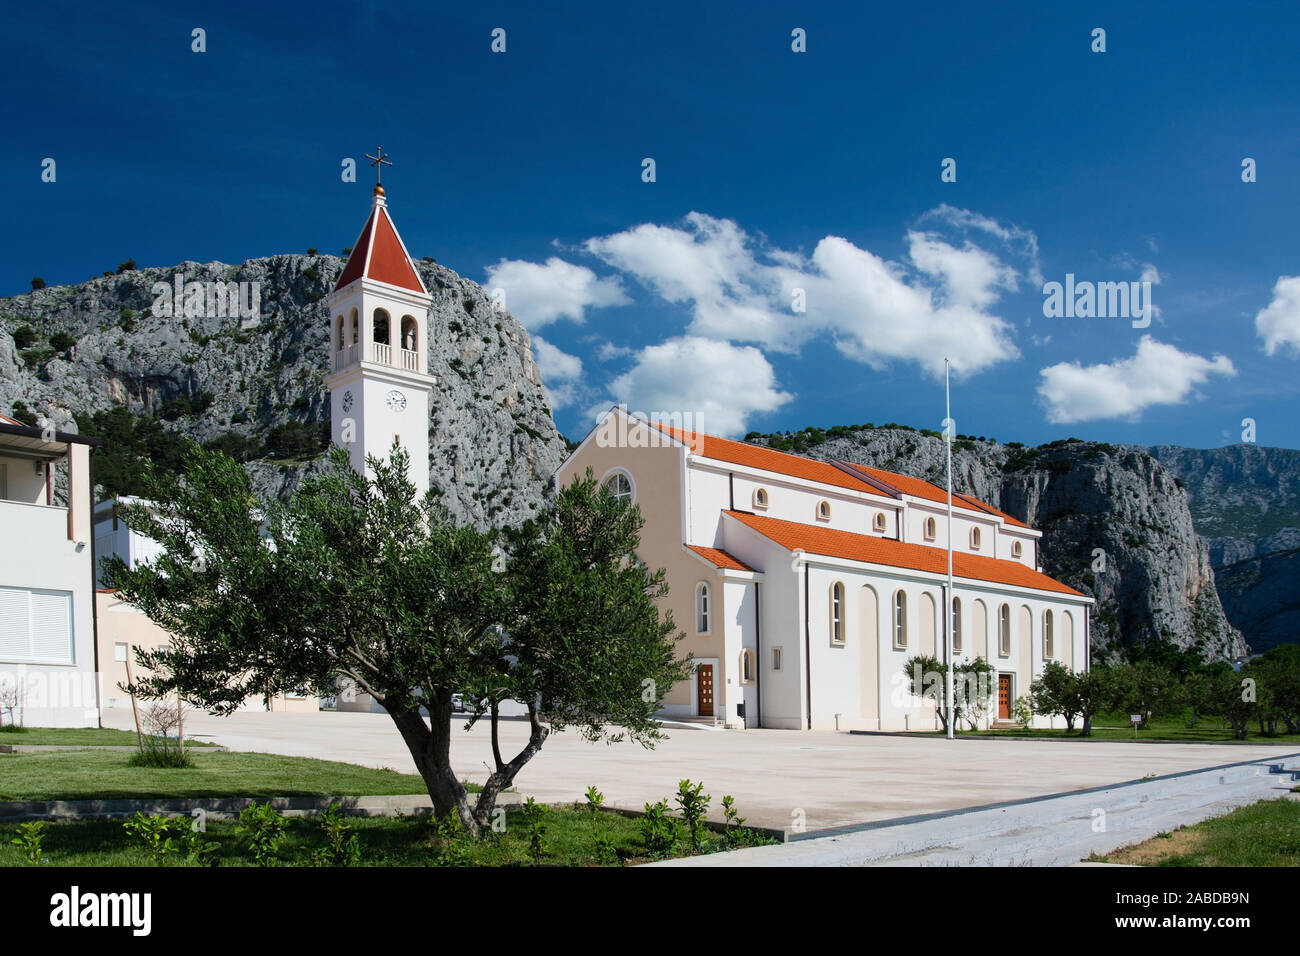 Die Stadt Omis liegt im Süden Kroatiens an der Mündung der Cetina ins adriatische Meer und gehört zu Dalmatien. Stock Photo